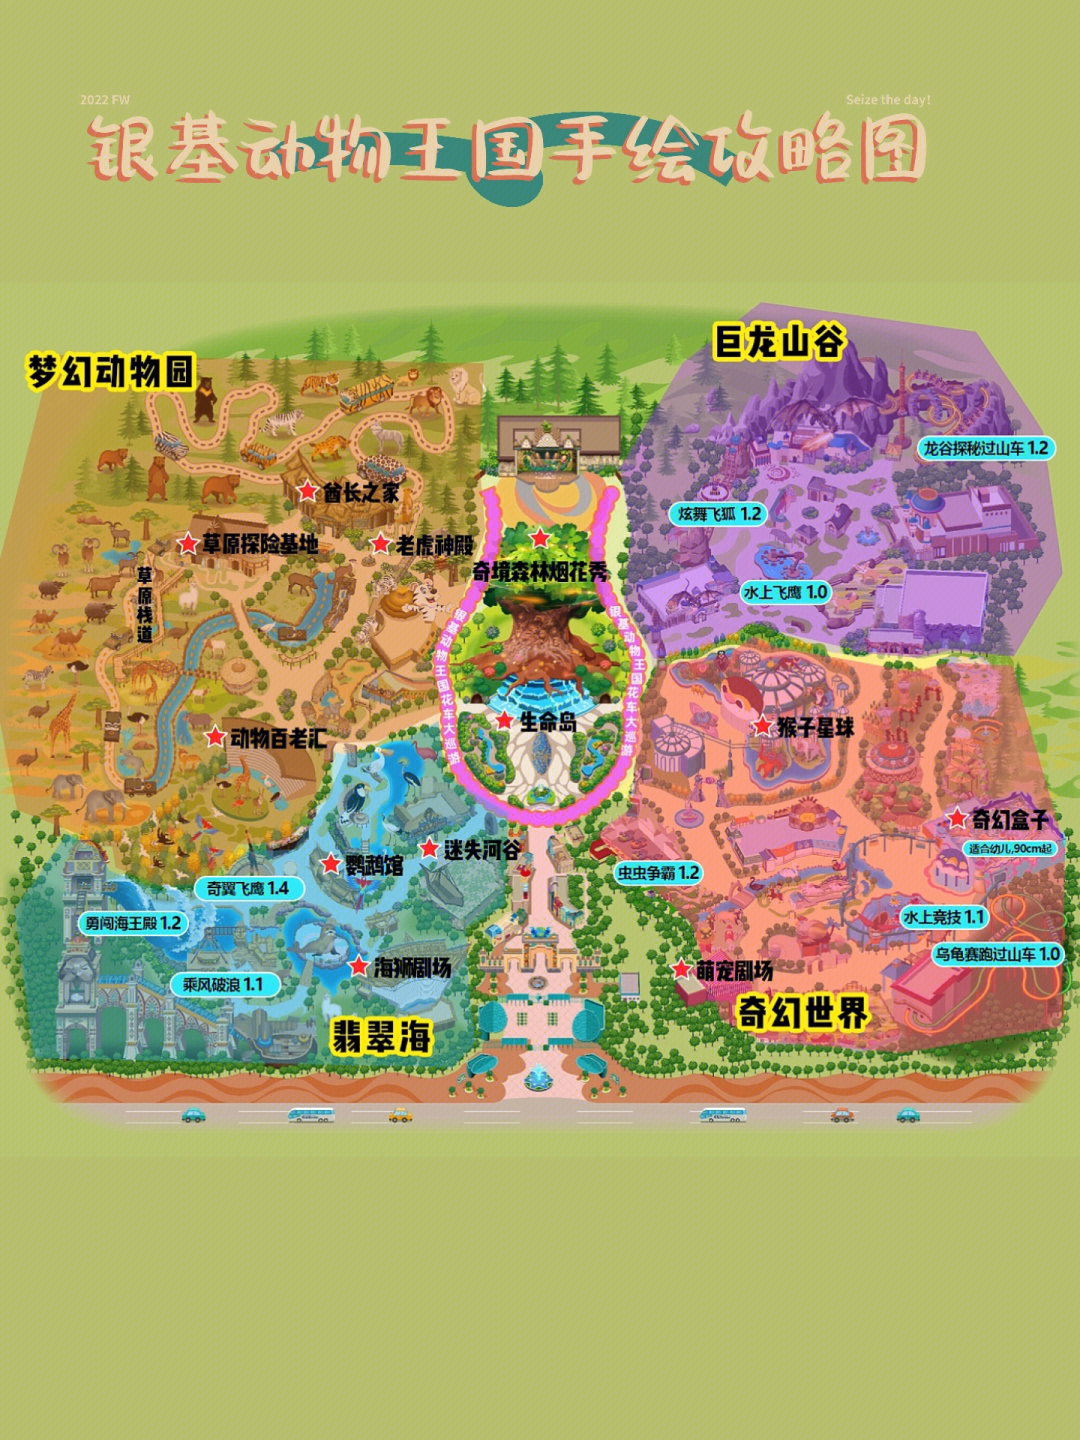 银基动物王国内部地图图片